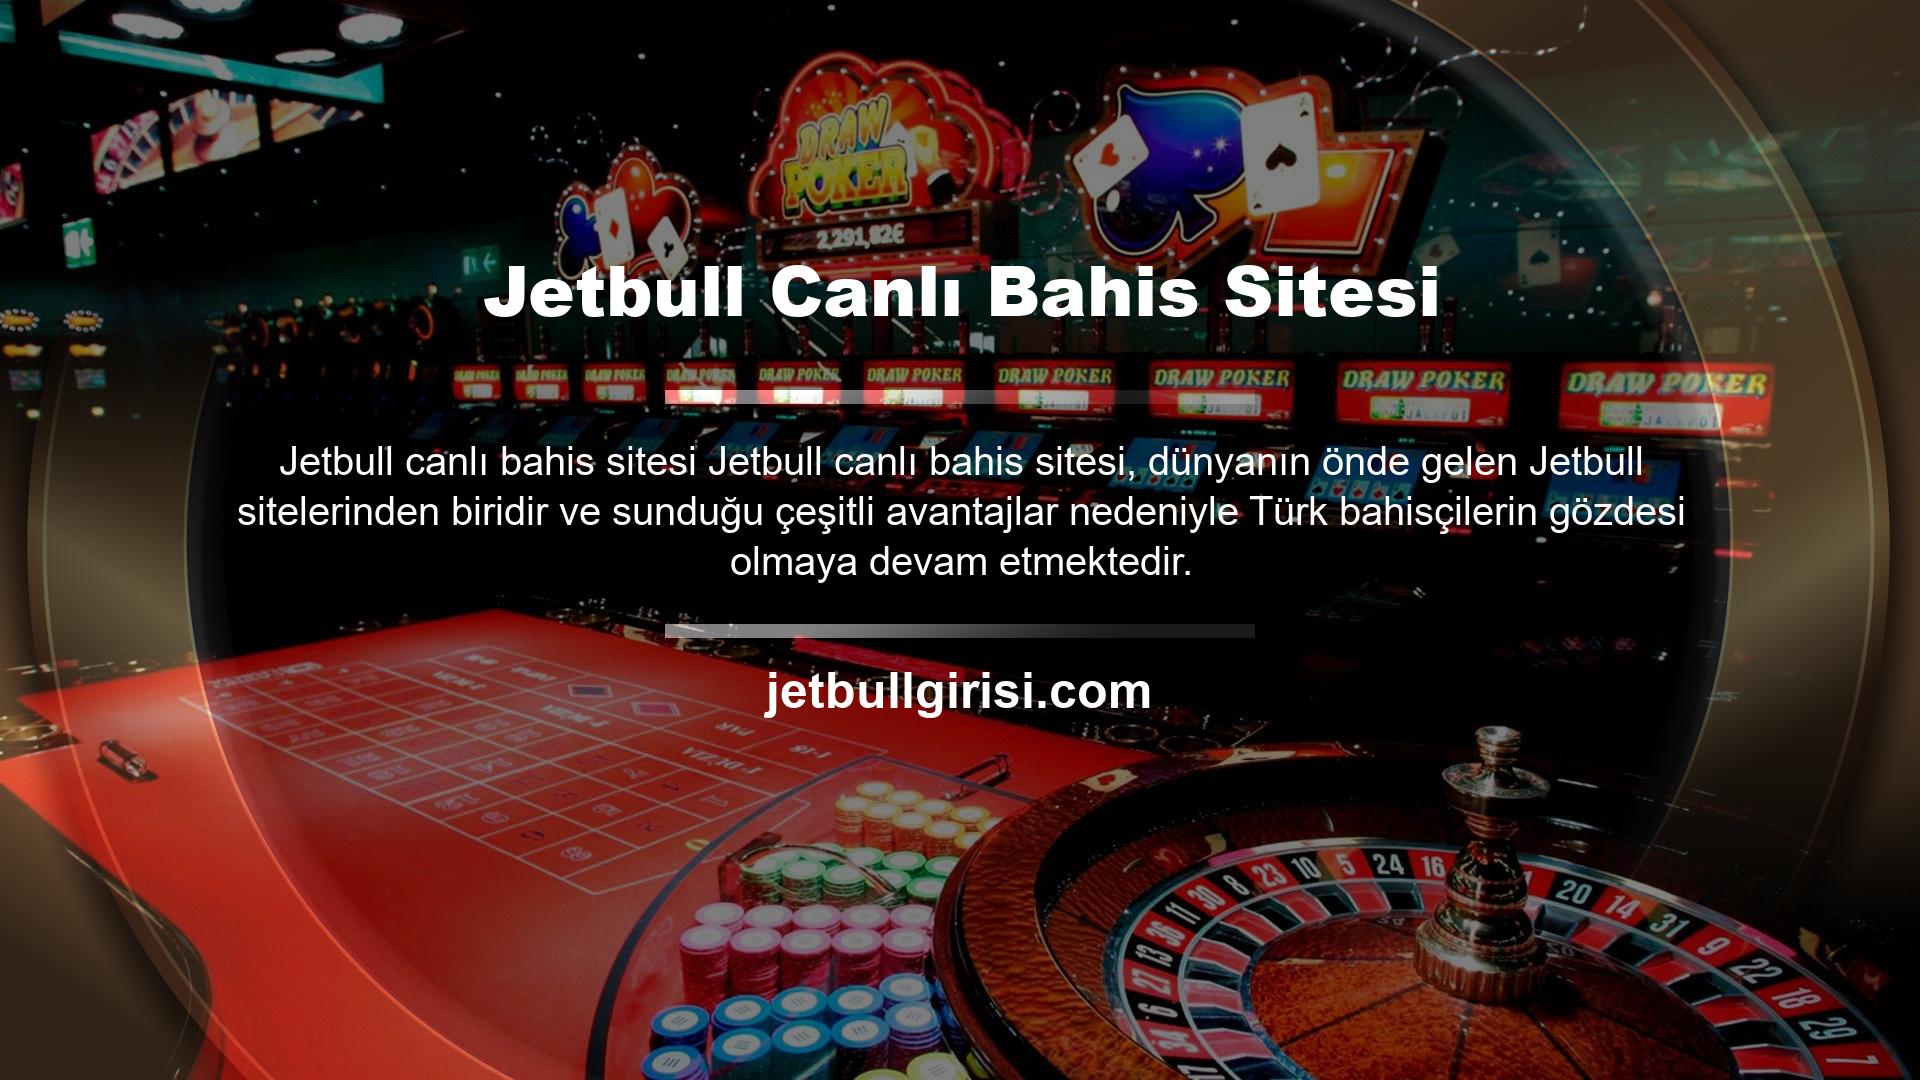 Katılması ve dönüşmesi kolay, Jetbull şu anda Türkiye'de neler yaşıyor? Jetbull güvenilebilir mi? Casino siteleri hakkında sorularınızın cevapları bizde